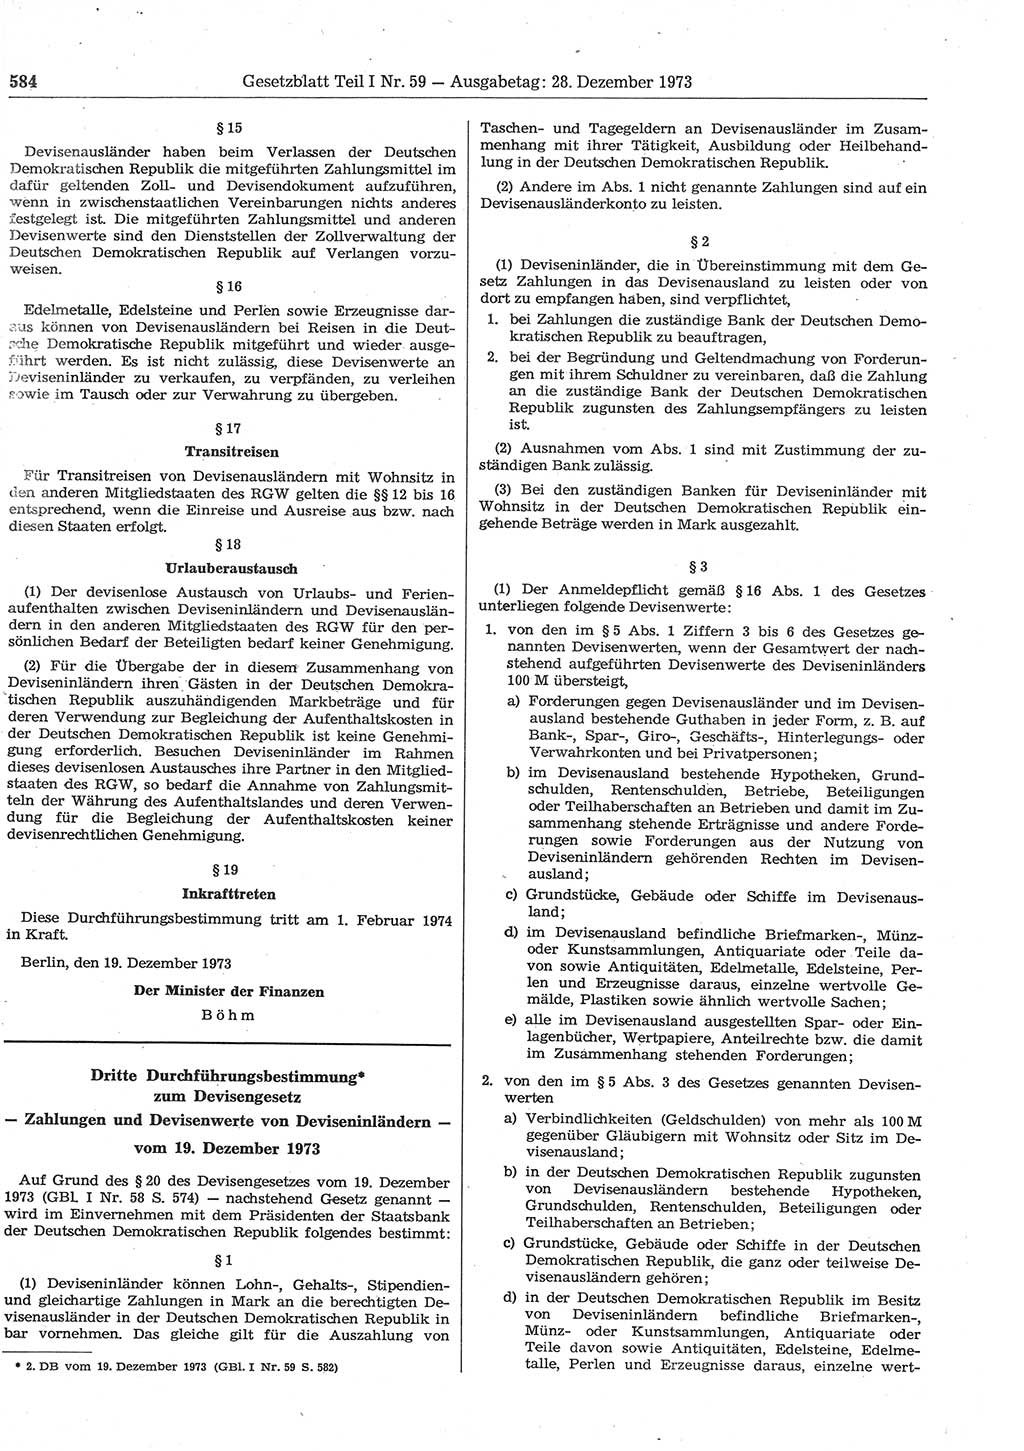 Gesetzblatt (GBl.) der Deutschen Demokratischen Republik (DDR) Teil Ⅰ 1973, Seite 584 (GBl. DDR Ⅰ 1973, S. 584)